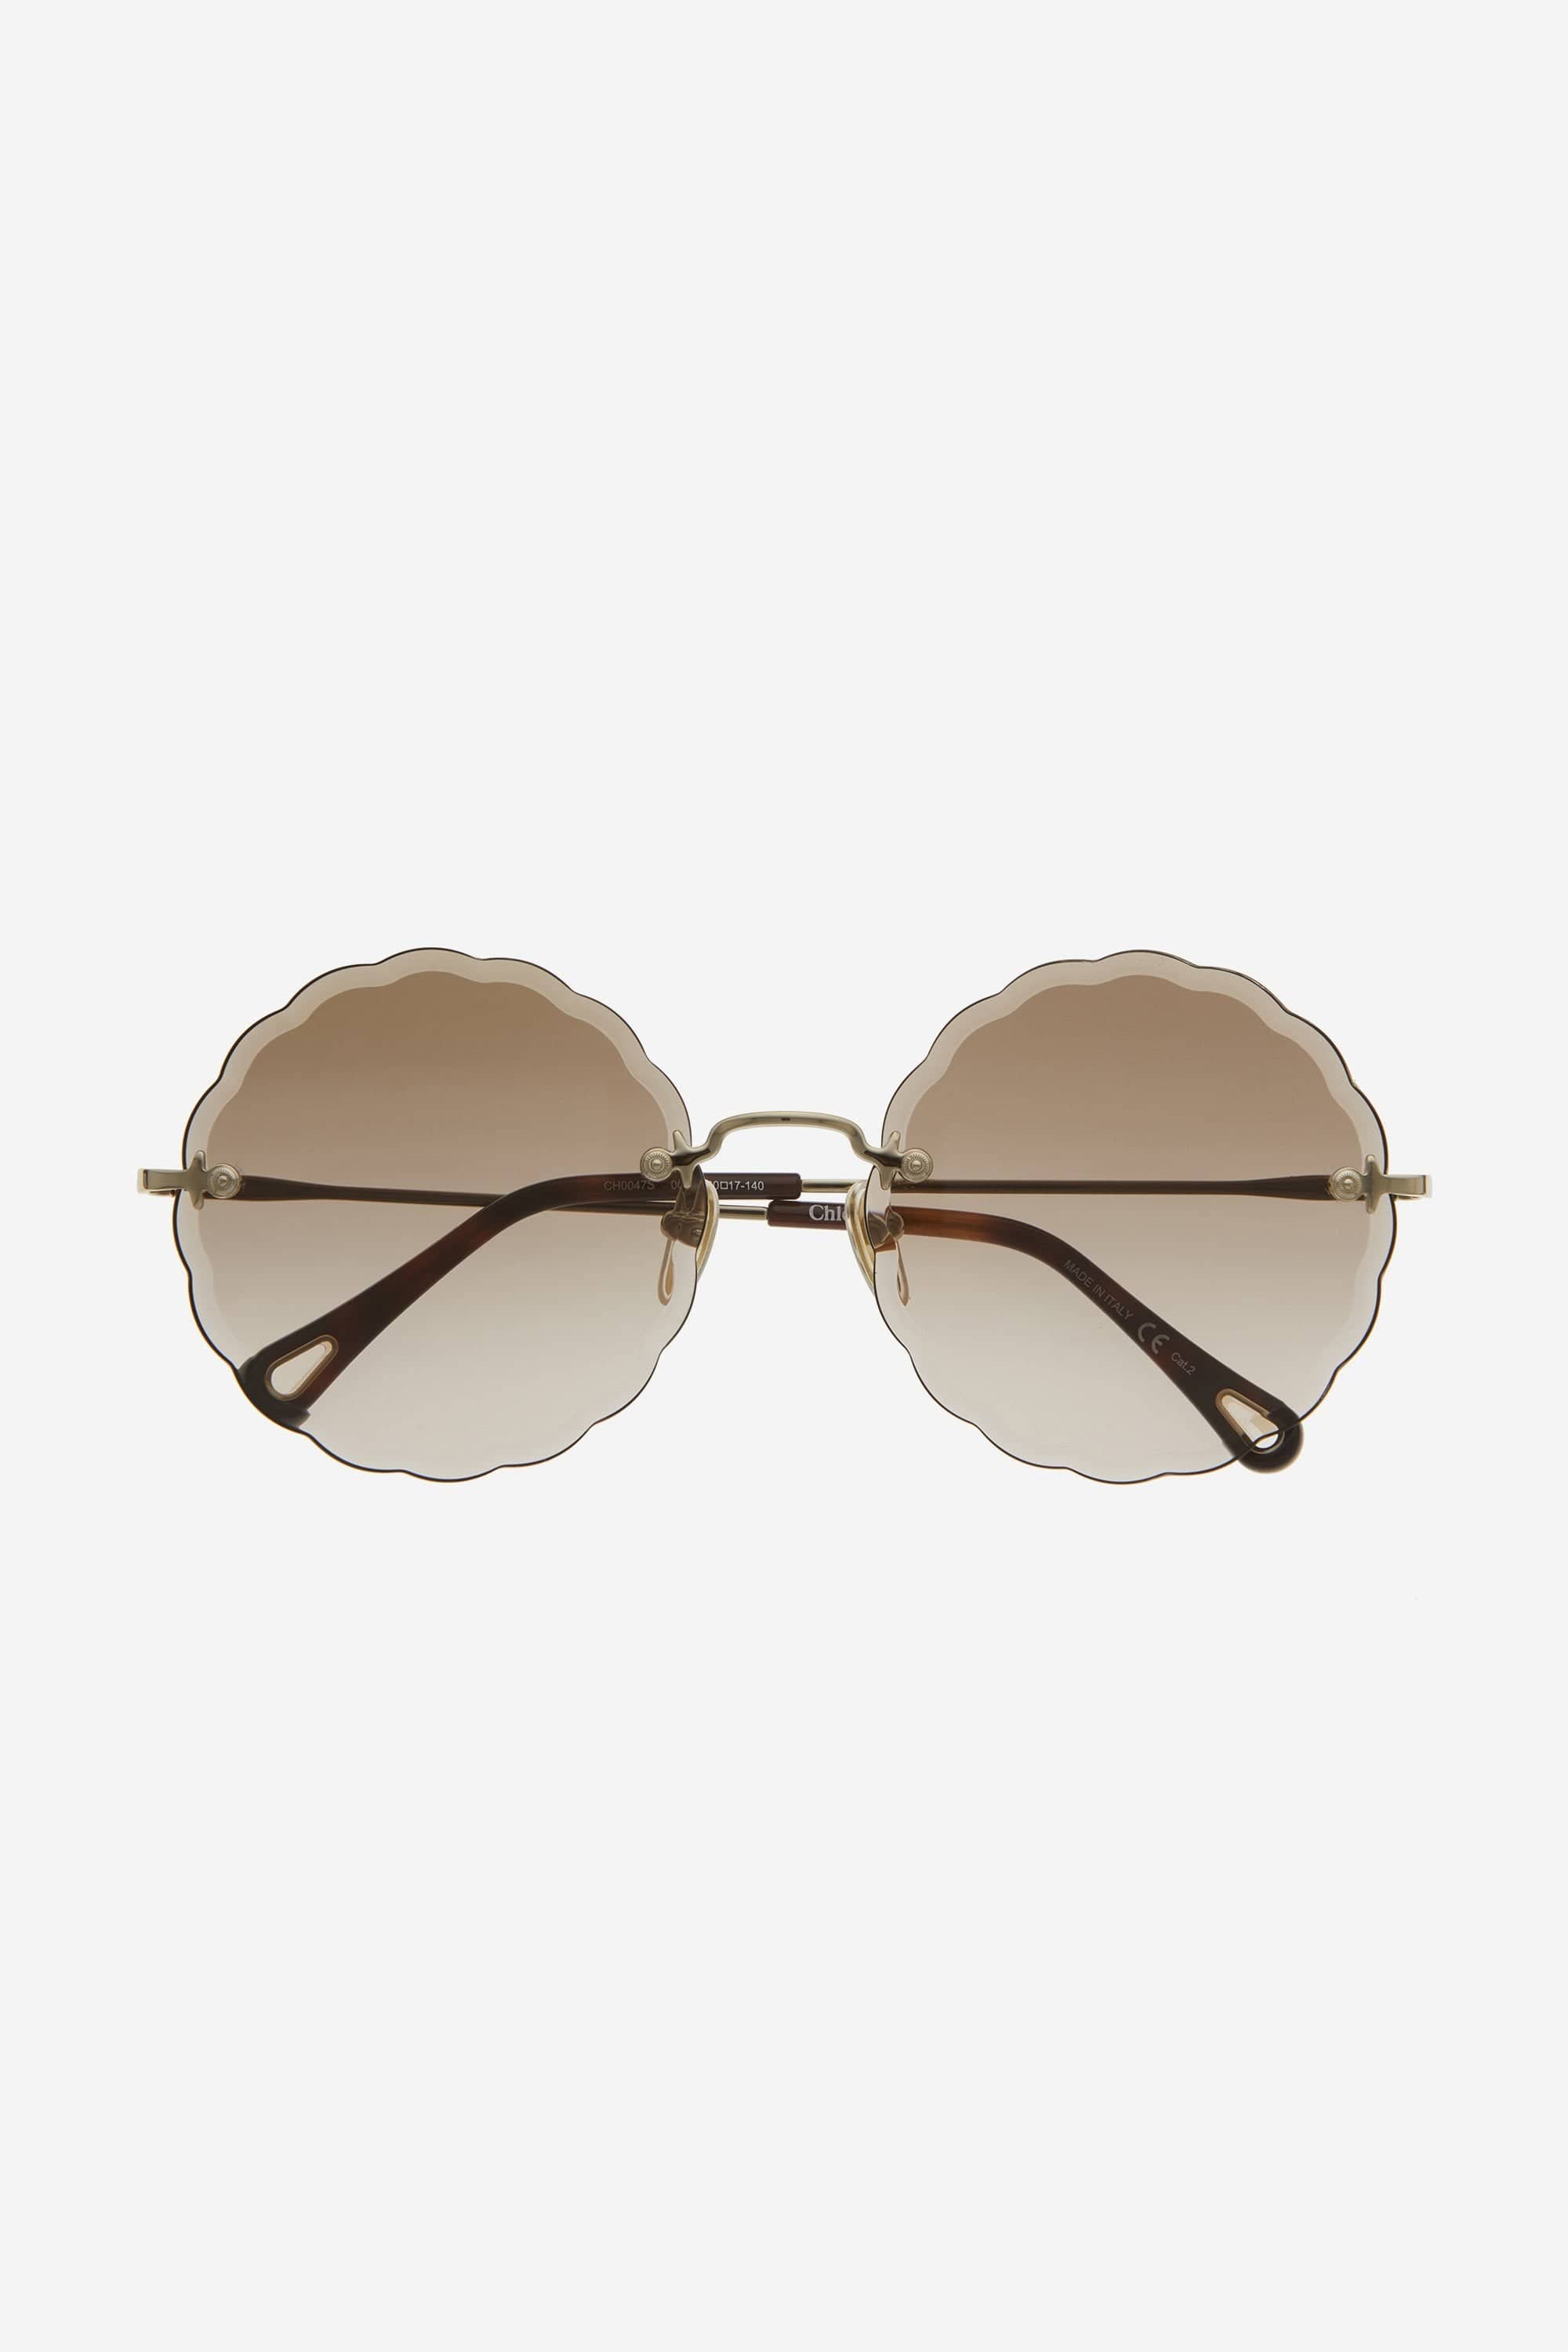 Chloe rosie brown femenine sunglasses - Eyewear Club